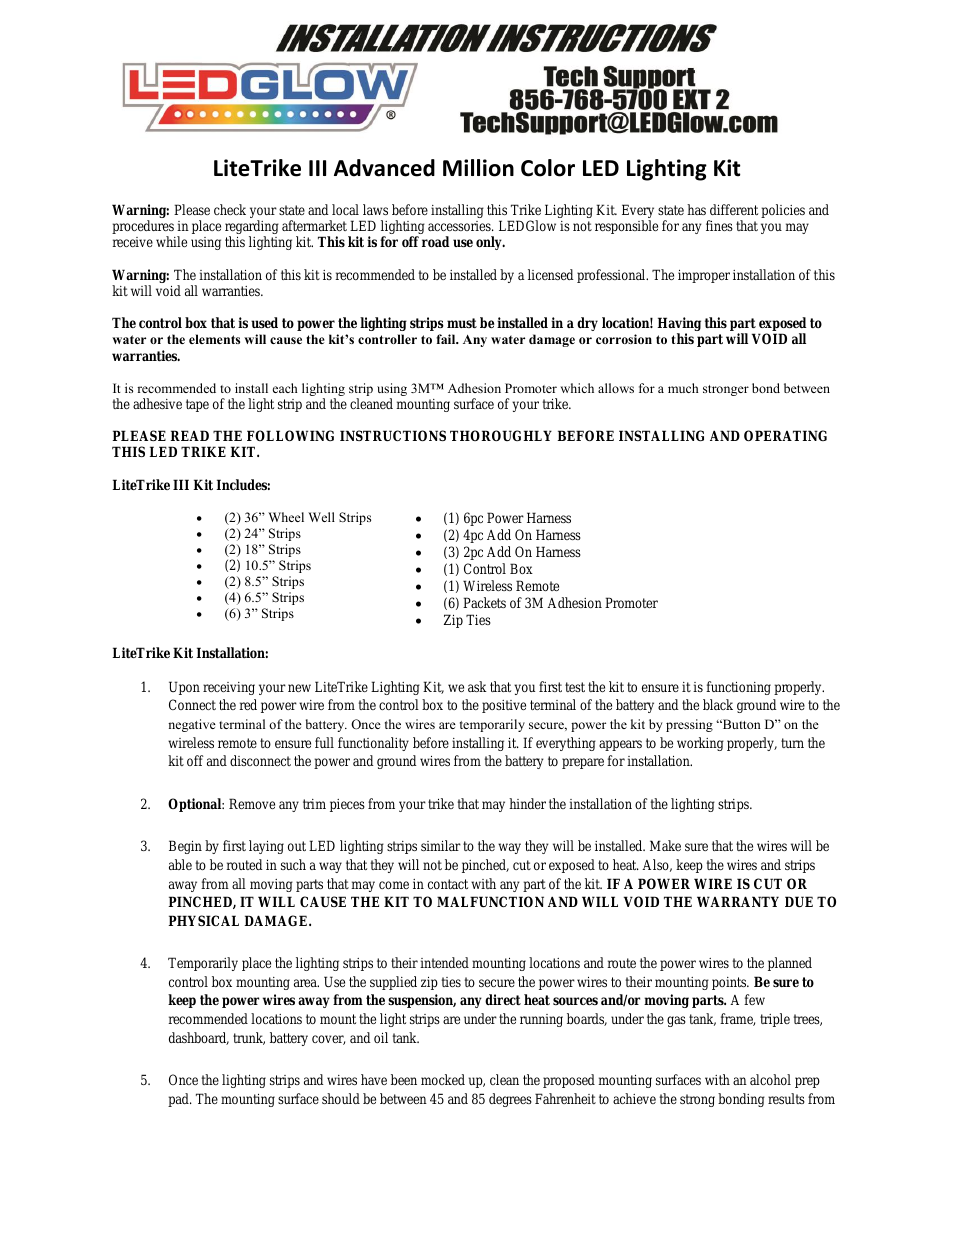 LiteTrike III Advanced Million Color LED Lighting Kit